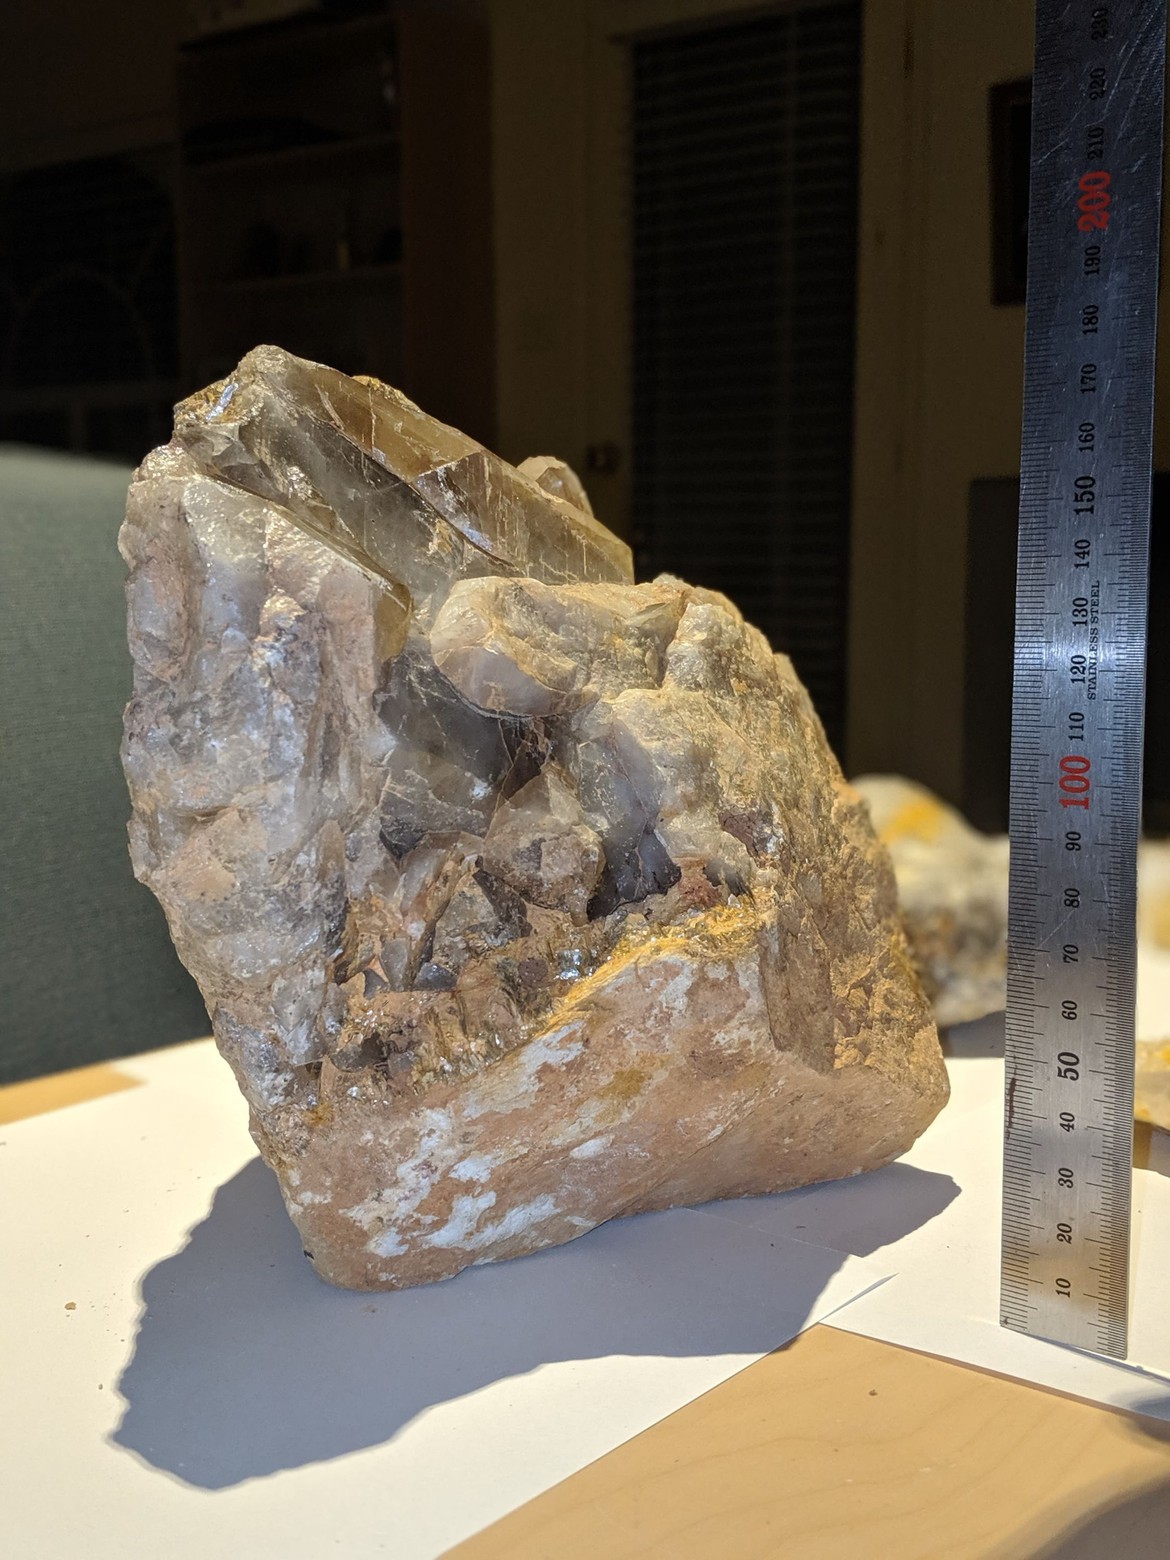 A large smoky quartz rock/crystal